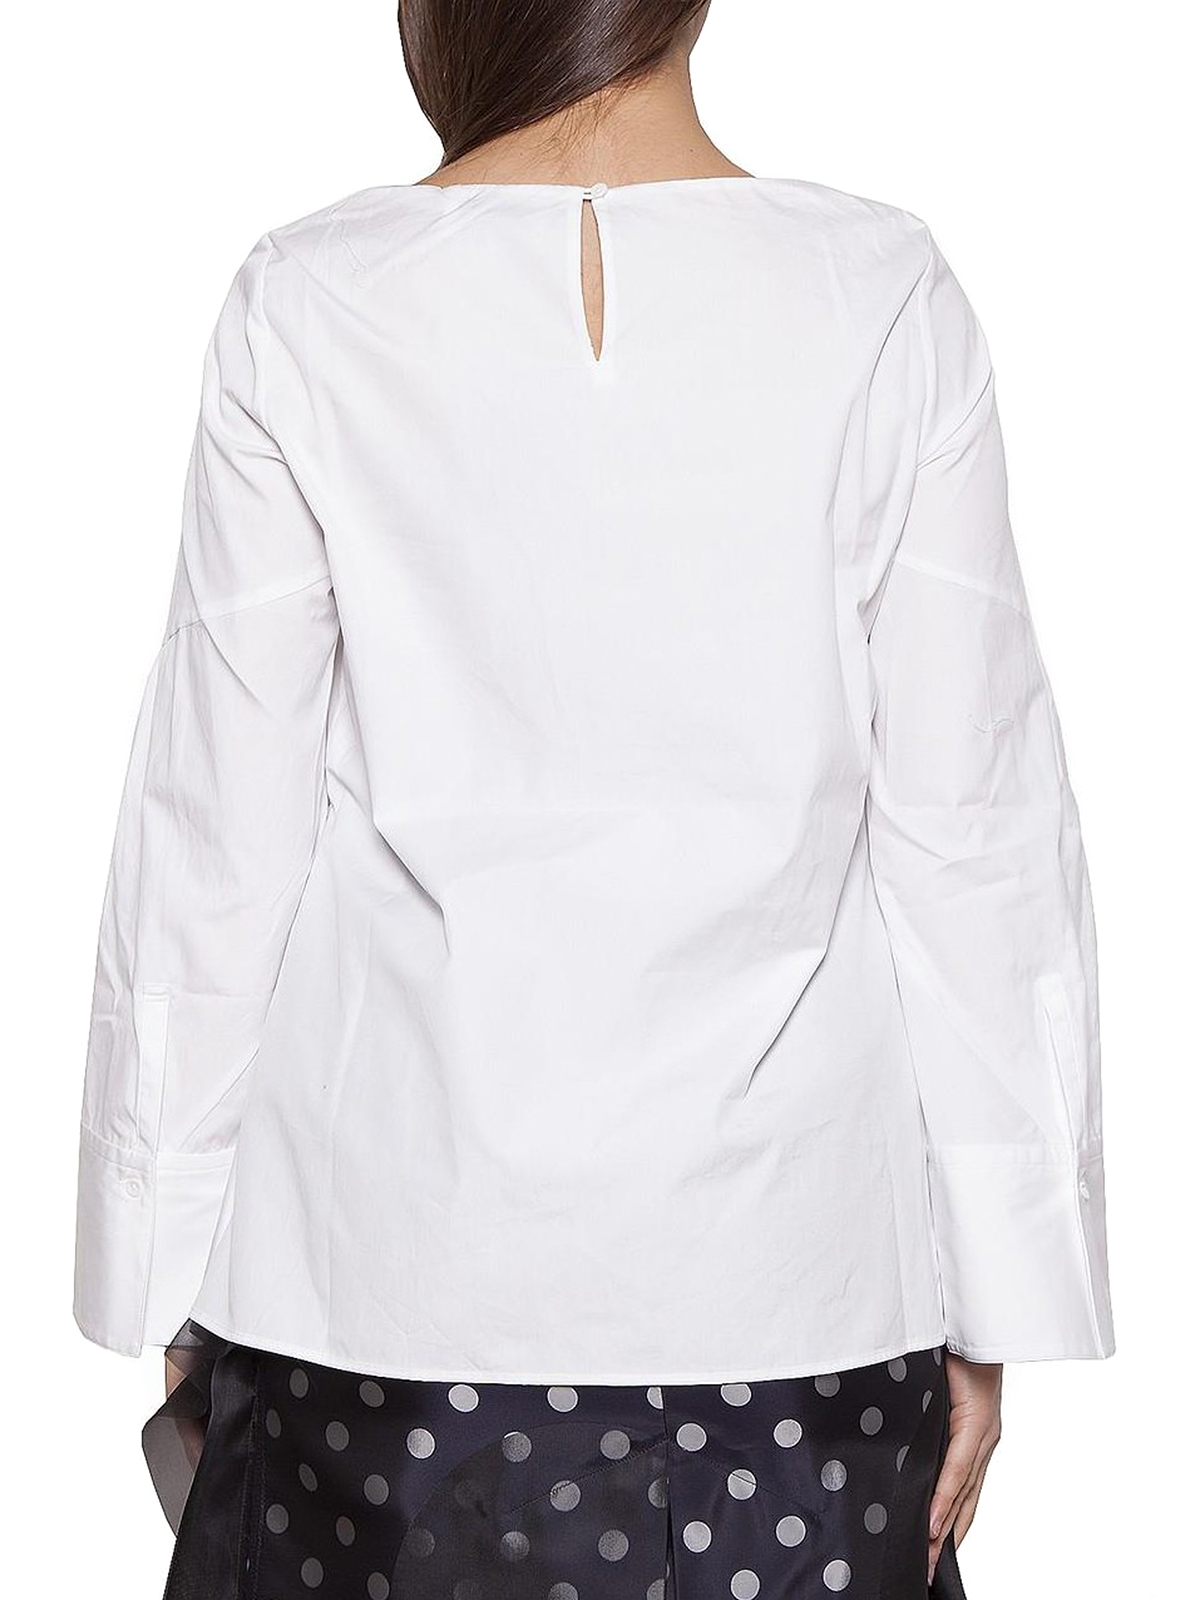 Blouses Phillip Lim - Maxi knot cotton blouse - E1812439SFPWH100